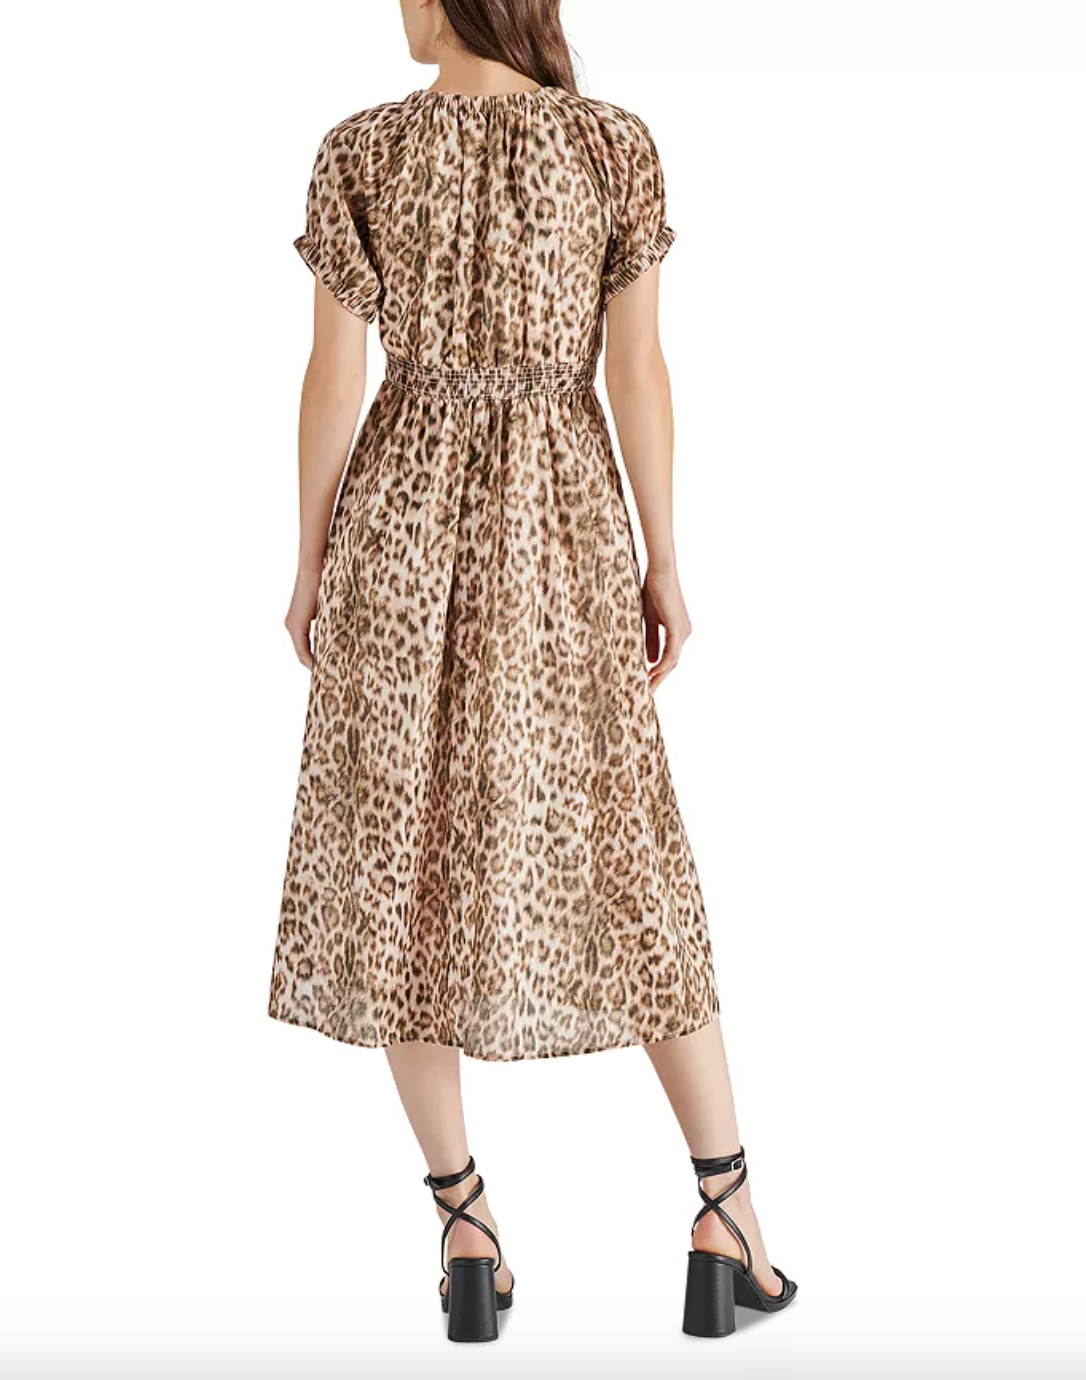 Tahlia Dress-Leopard